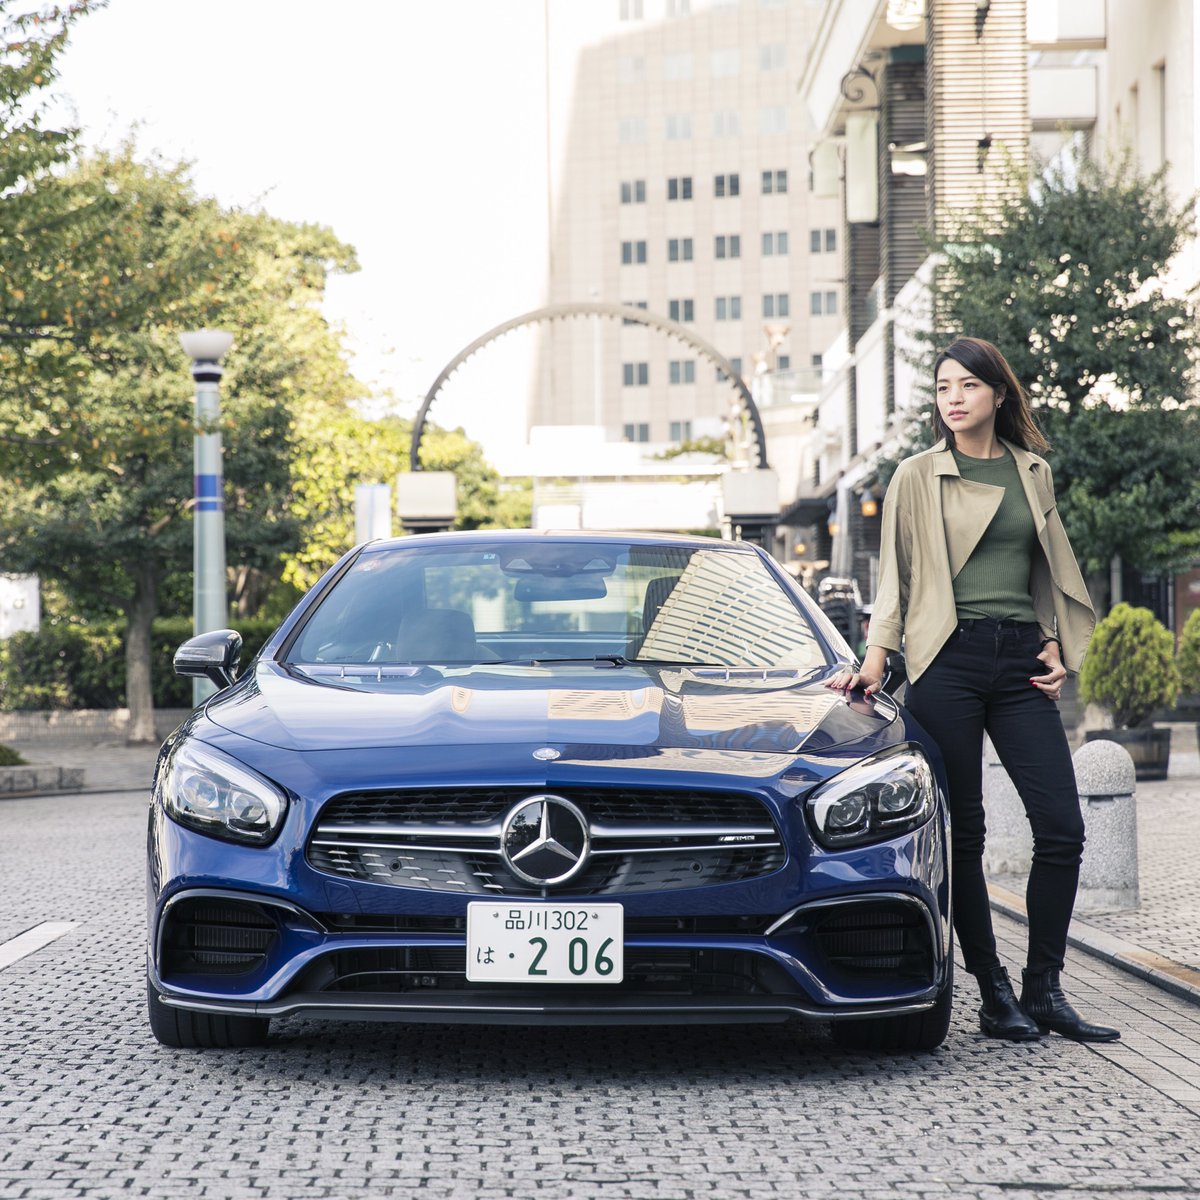 メルセデス ベンツ日本 Mercedes Benz Japan En Twitter 公式インスタグラムでは 3人の女性とメルセデスのあるライフスタイルを表現したイラストをご紹介 今回は 仕事を忘れてメルセデスでドライブを楽しむ女性にフォーカスしました Shesmercedes T Co